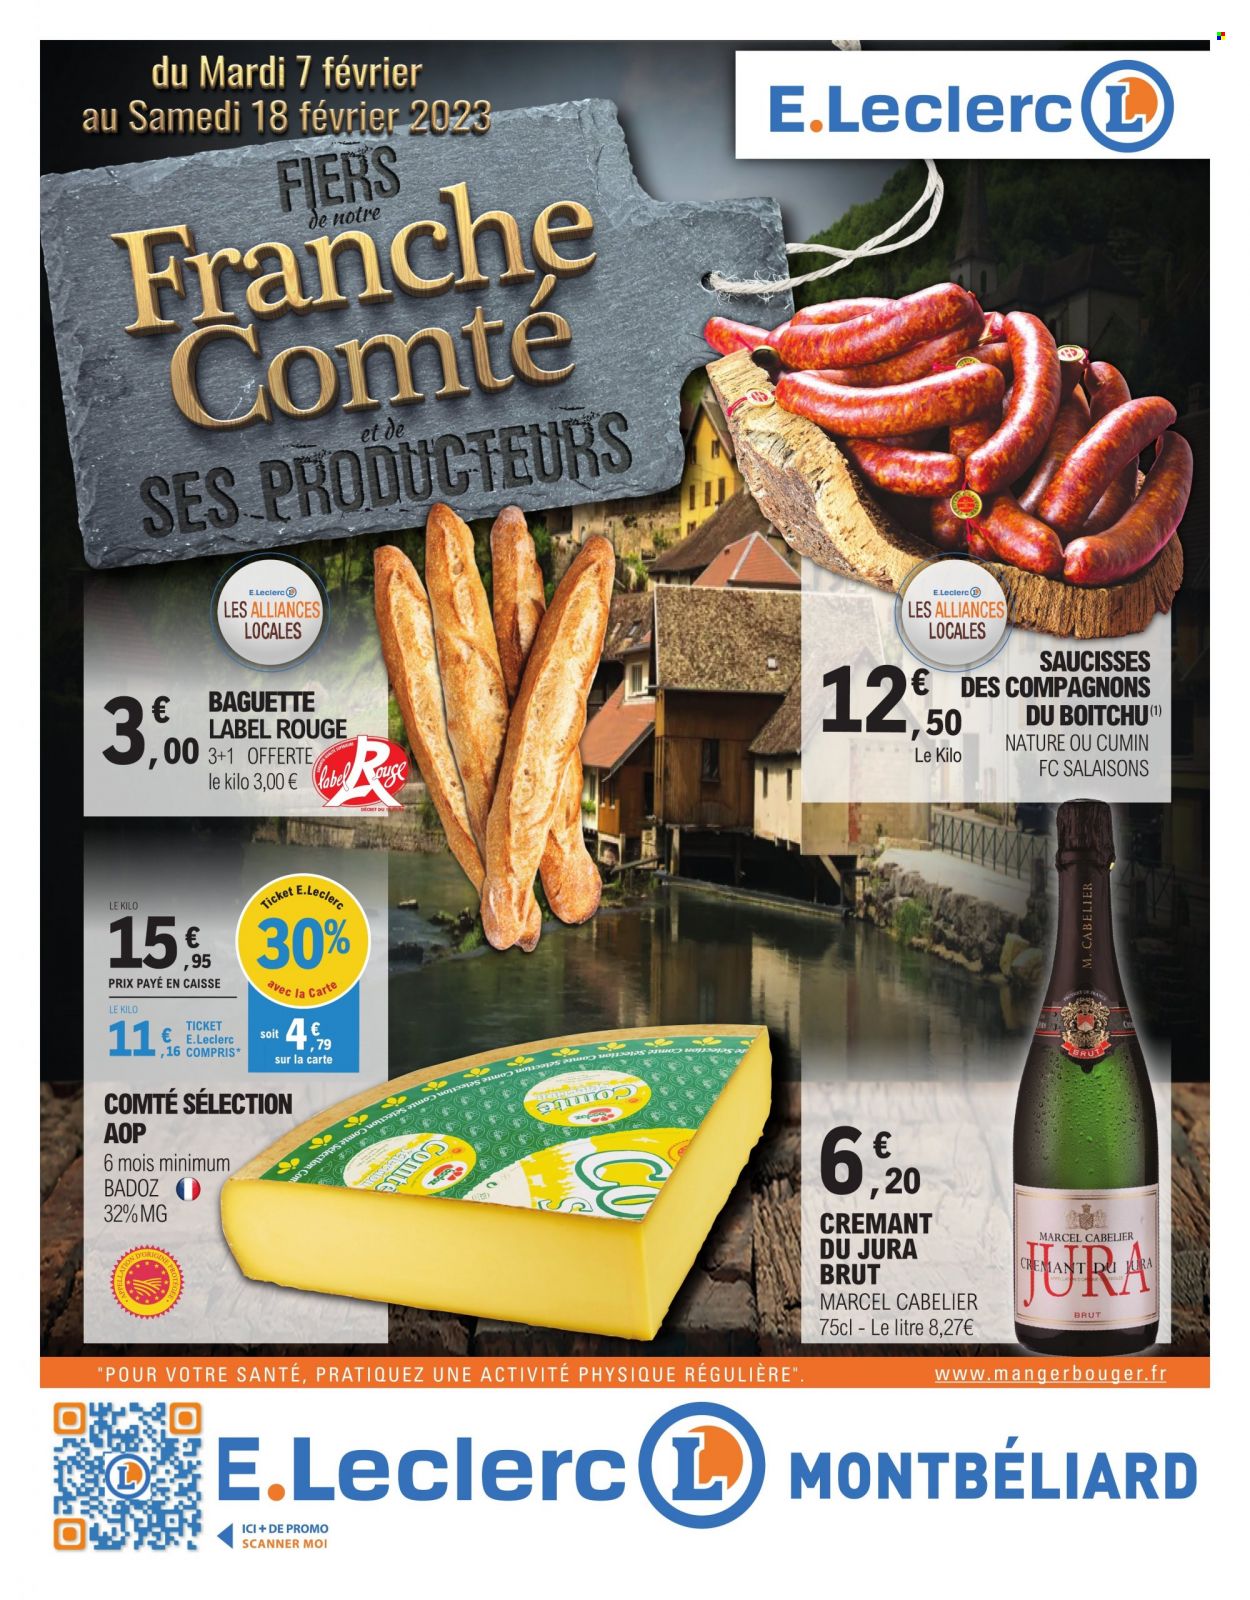 thumbnail - Catalogue E.Leclerc - 07/02/2023 - 18/02/2023 - Produits soldés - baguette, saucisse, Comté, cumin, scanner. Page 1.